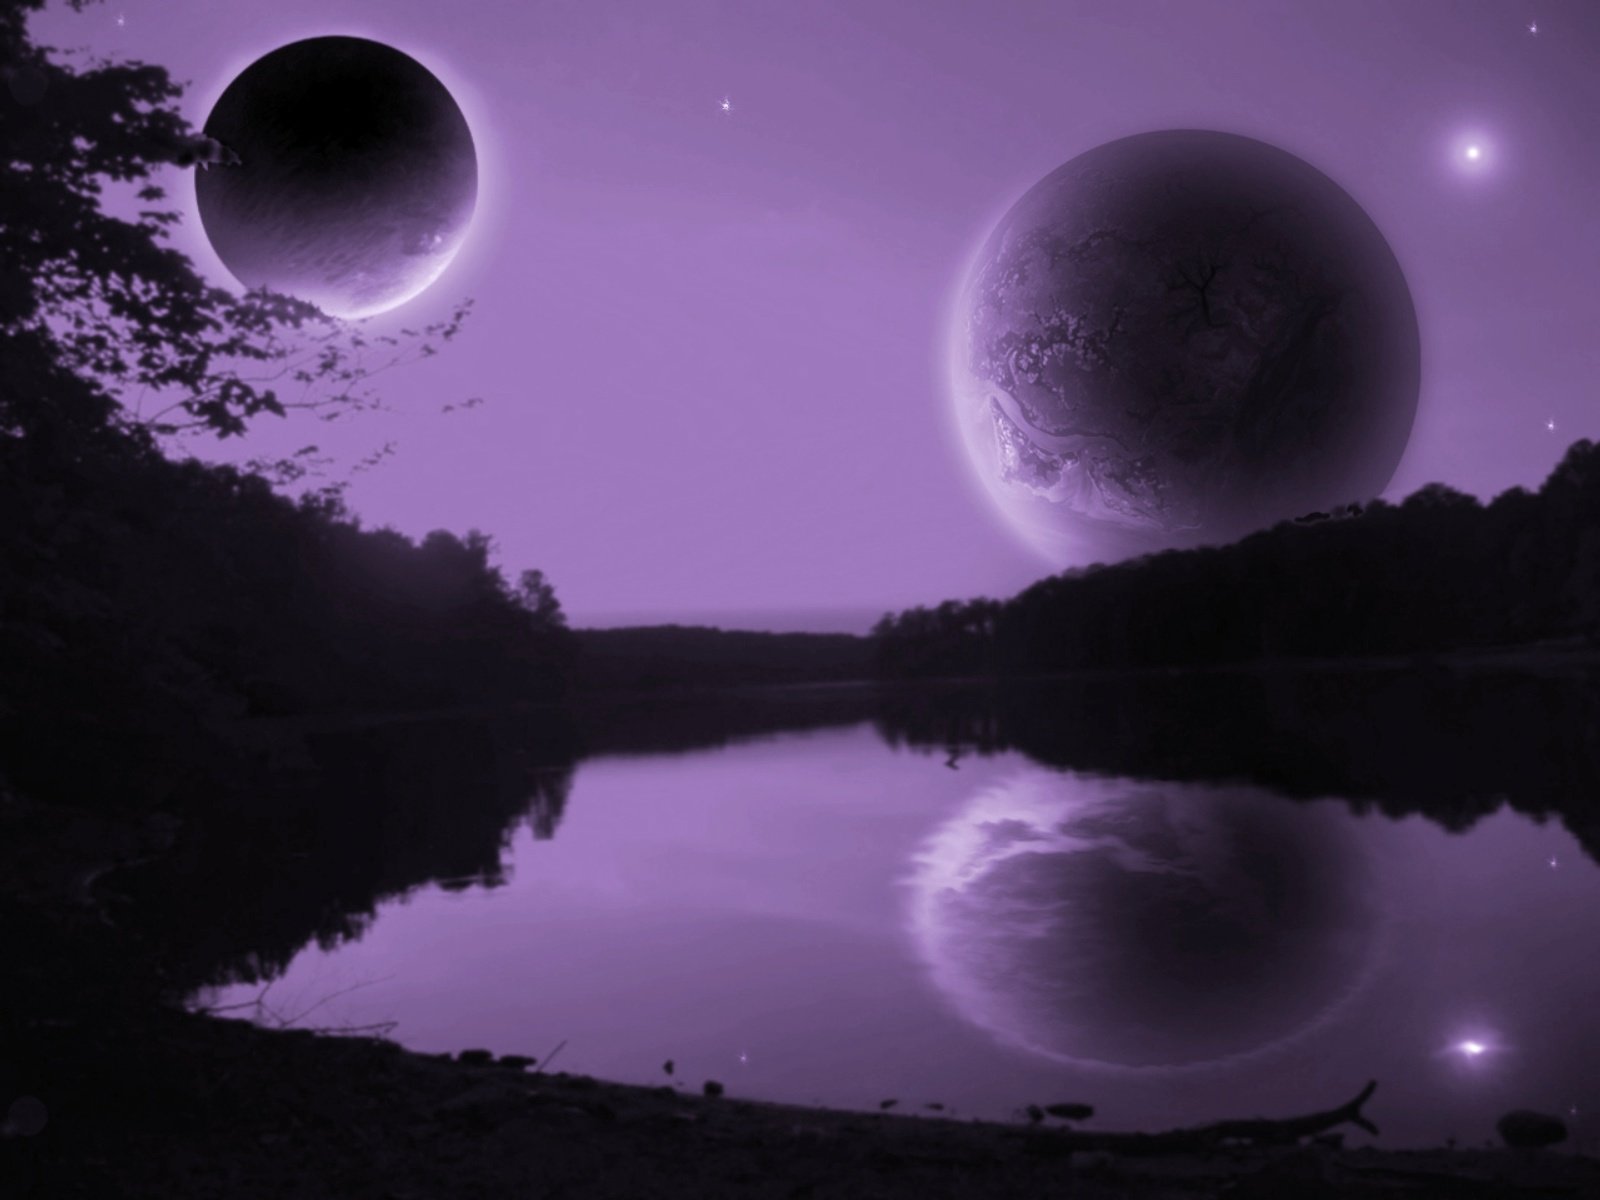 Purple Scene 5 by GeneAut on DeviantArt